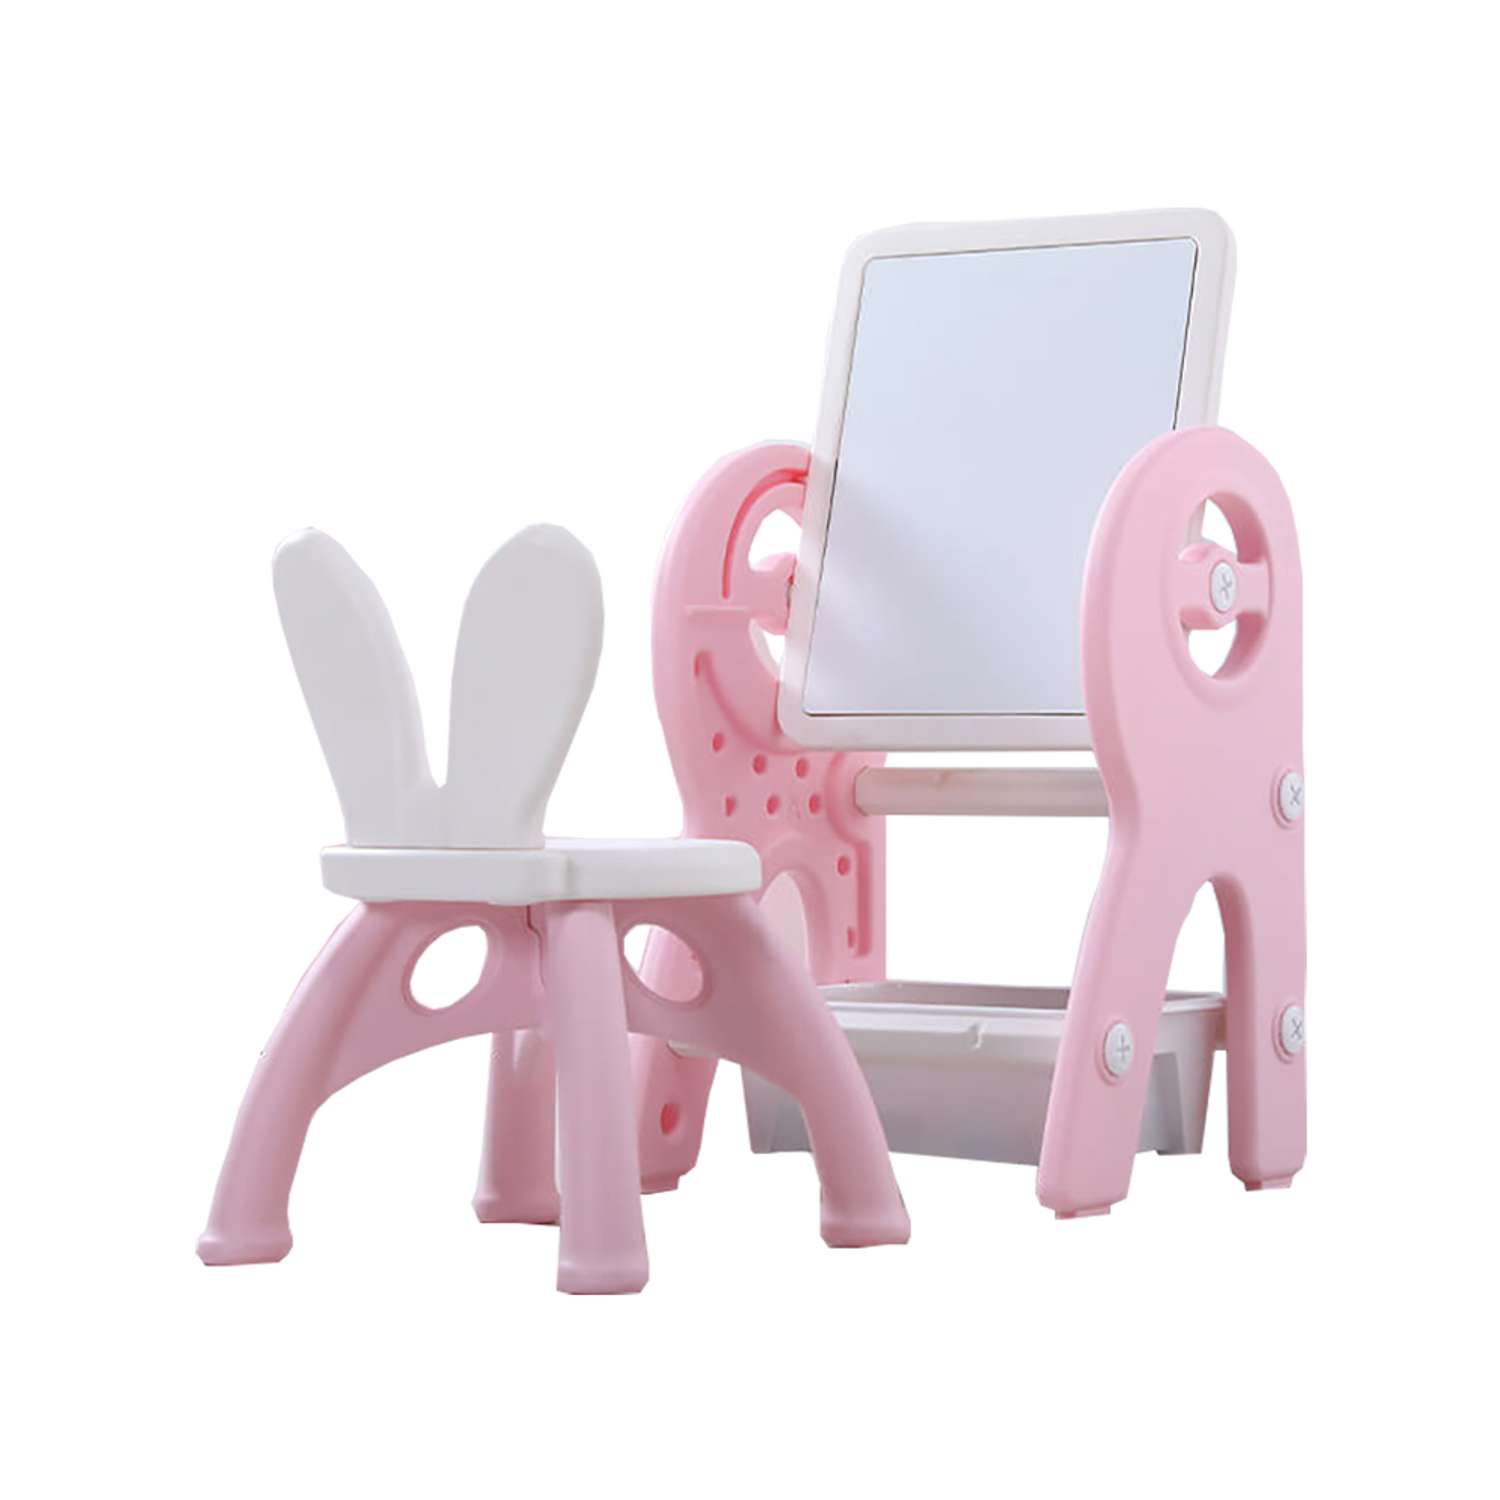 Набор для творчества Floopsi мольберт столик конструктор стульчик. Доска для рисования и конструирования Розовый - фото 1